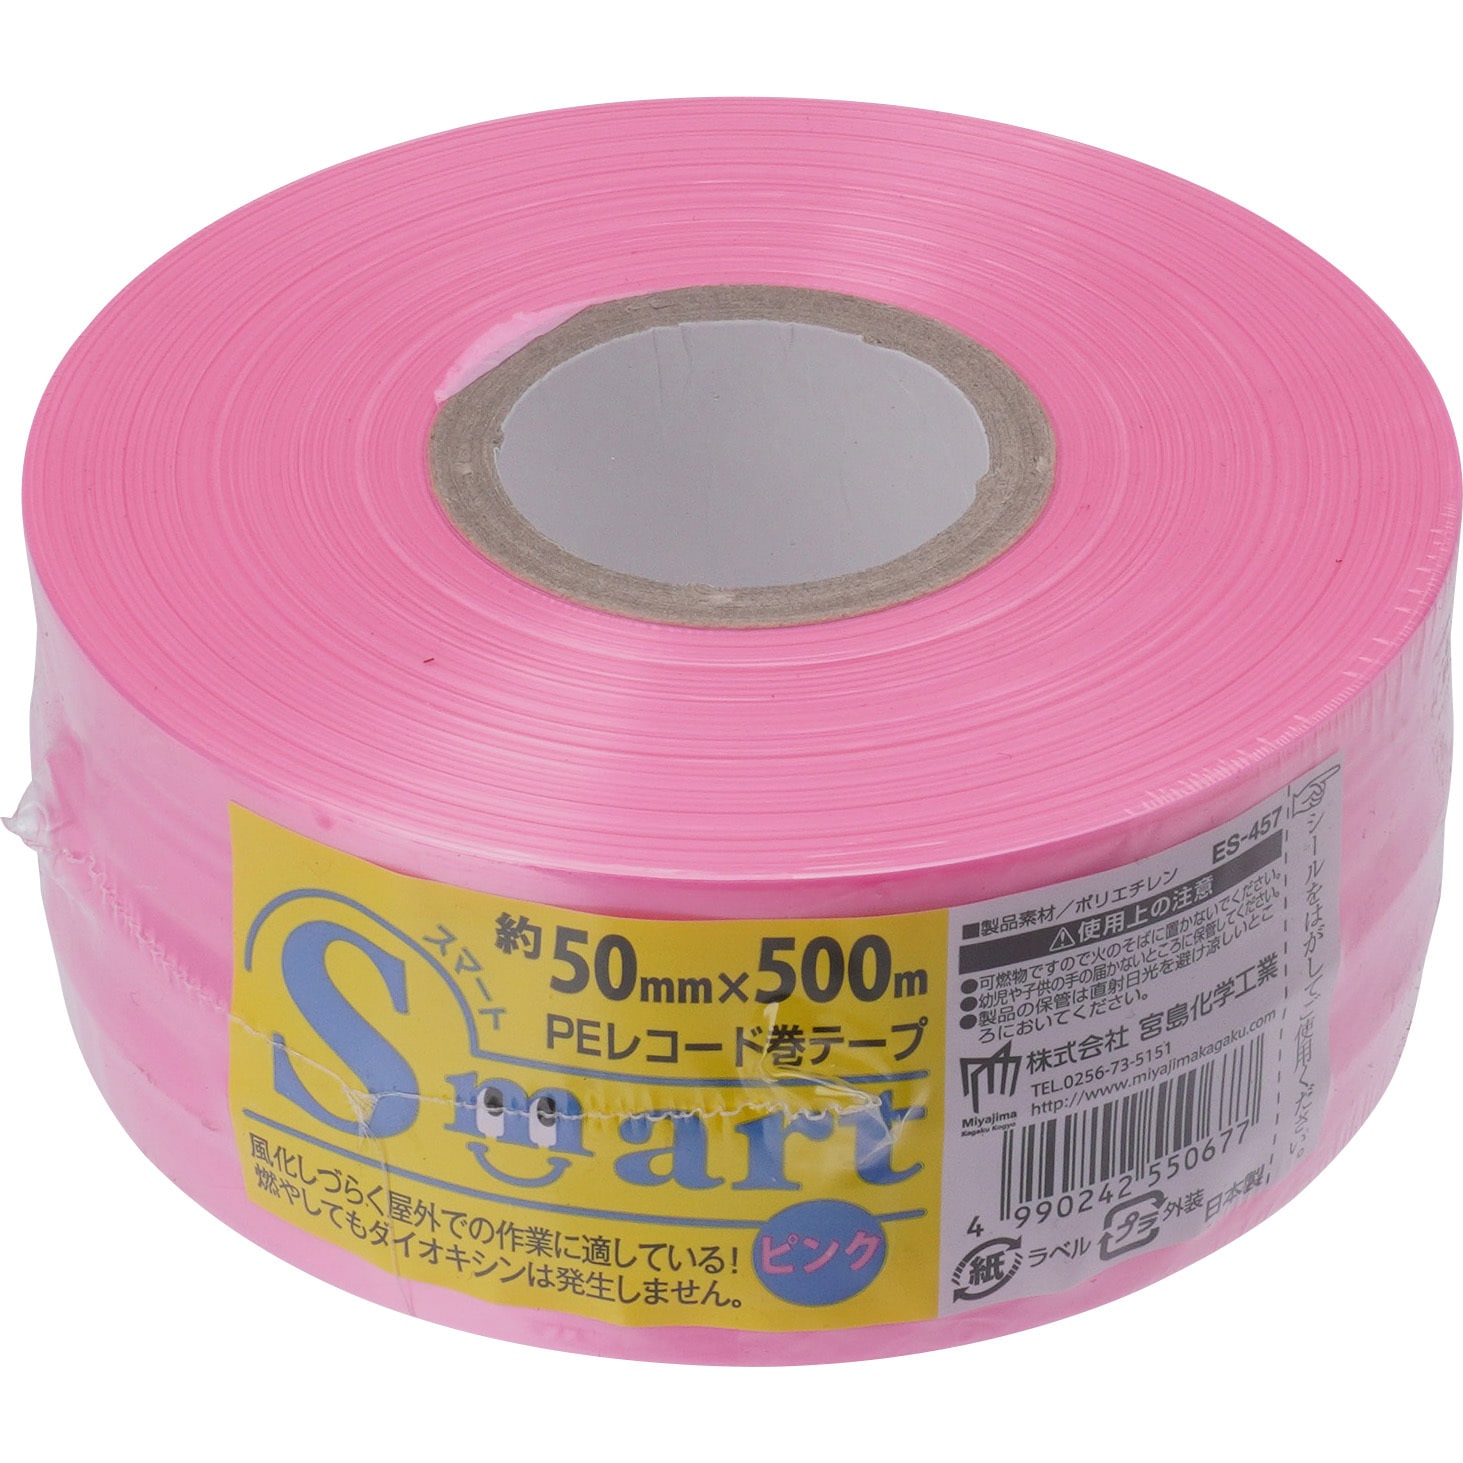 ローヤルシルバーテープ平巻ピンク50mm約500m30巻 - 4